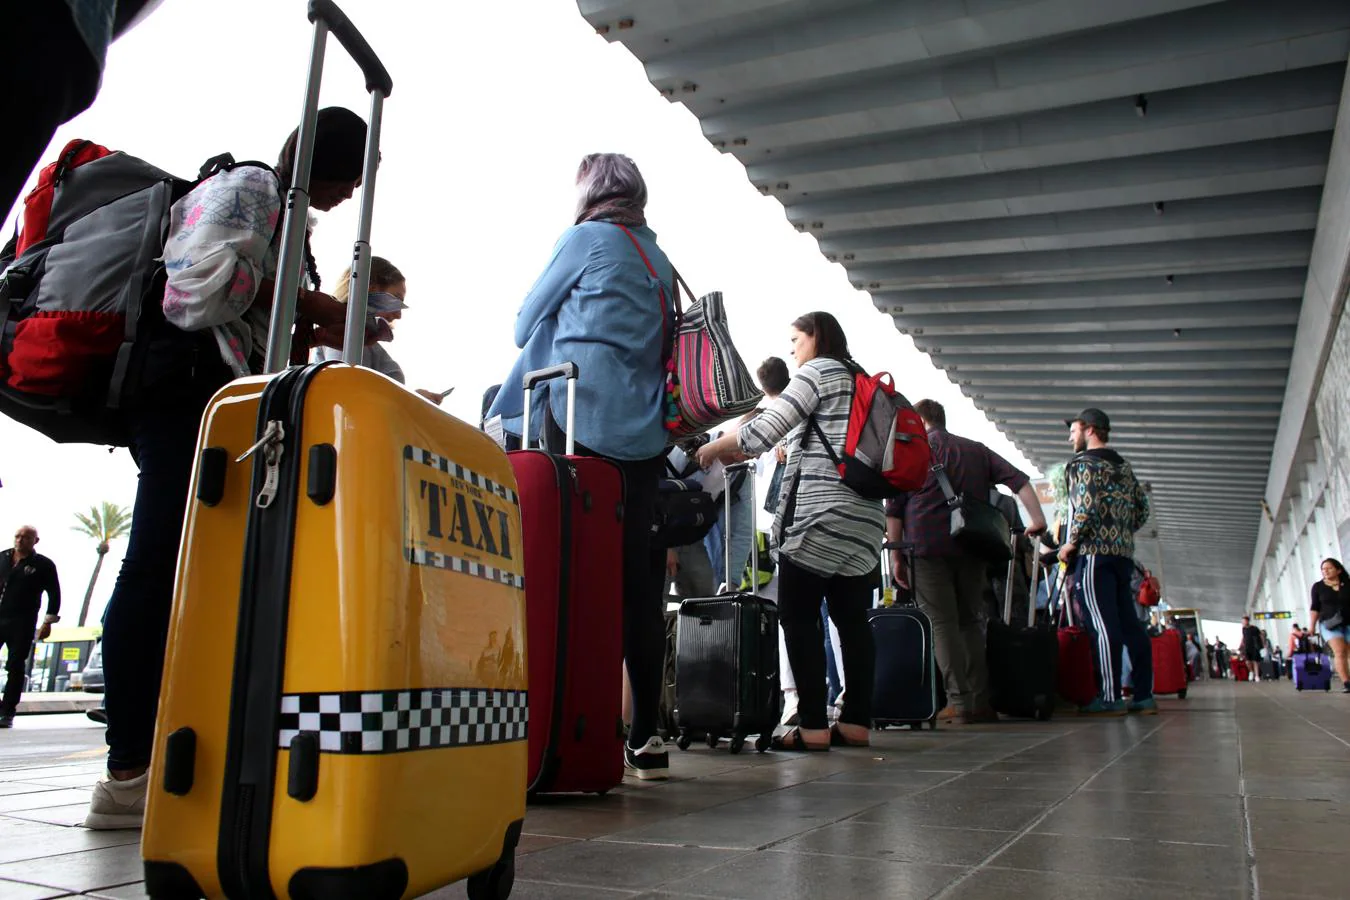 La huelga de taxis ha obligado a muchos pasejeros de paso por el aeropuerto barcelonés de El Prat a buscar medios de transporte alternativos